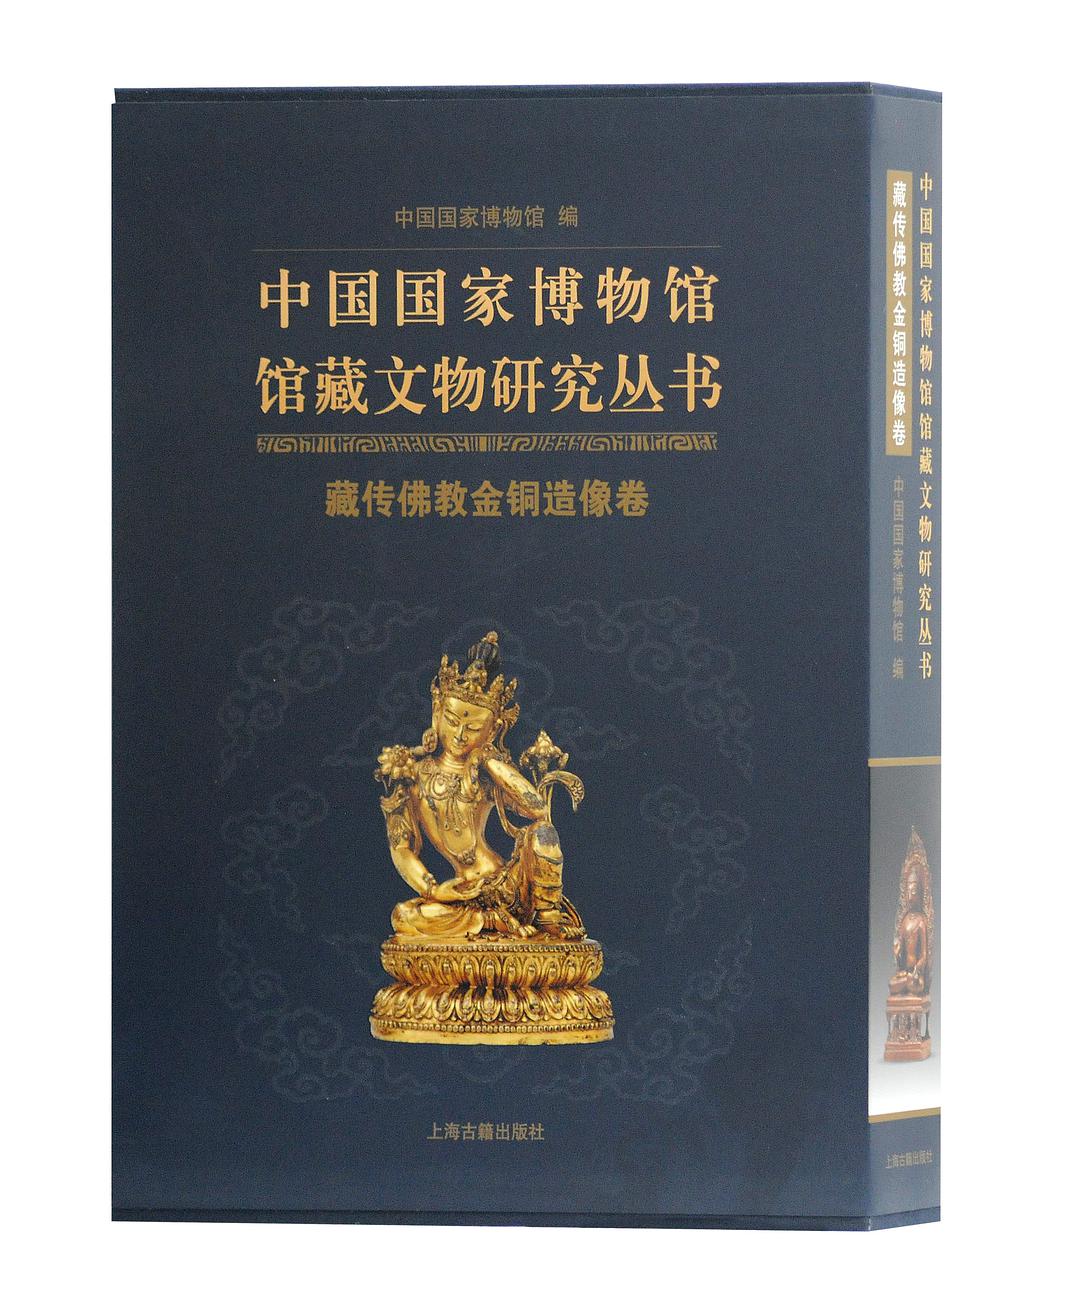 中国国家博物馆馆藏文物研究丛书 藏传佛教金铜造像卷